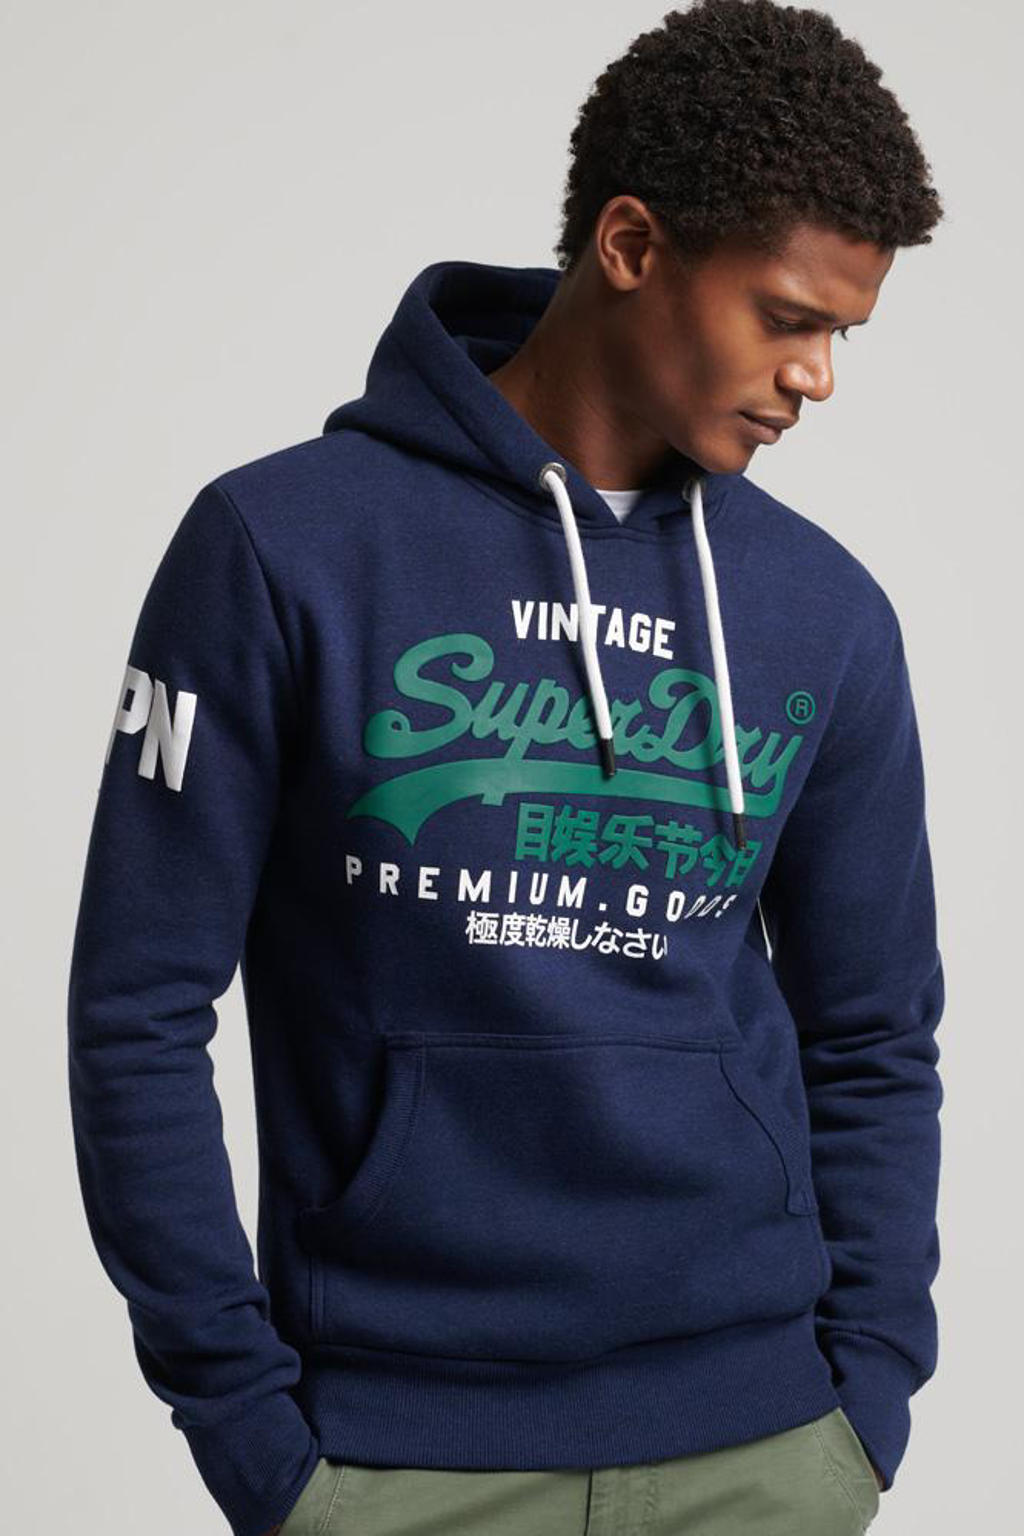 Superdry hoodie met logo midnight blue grit